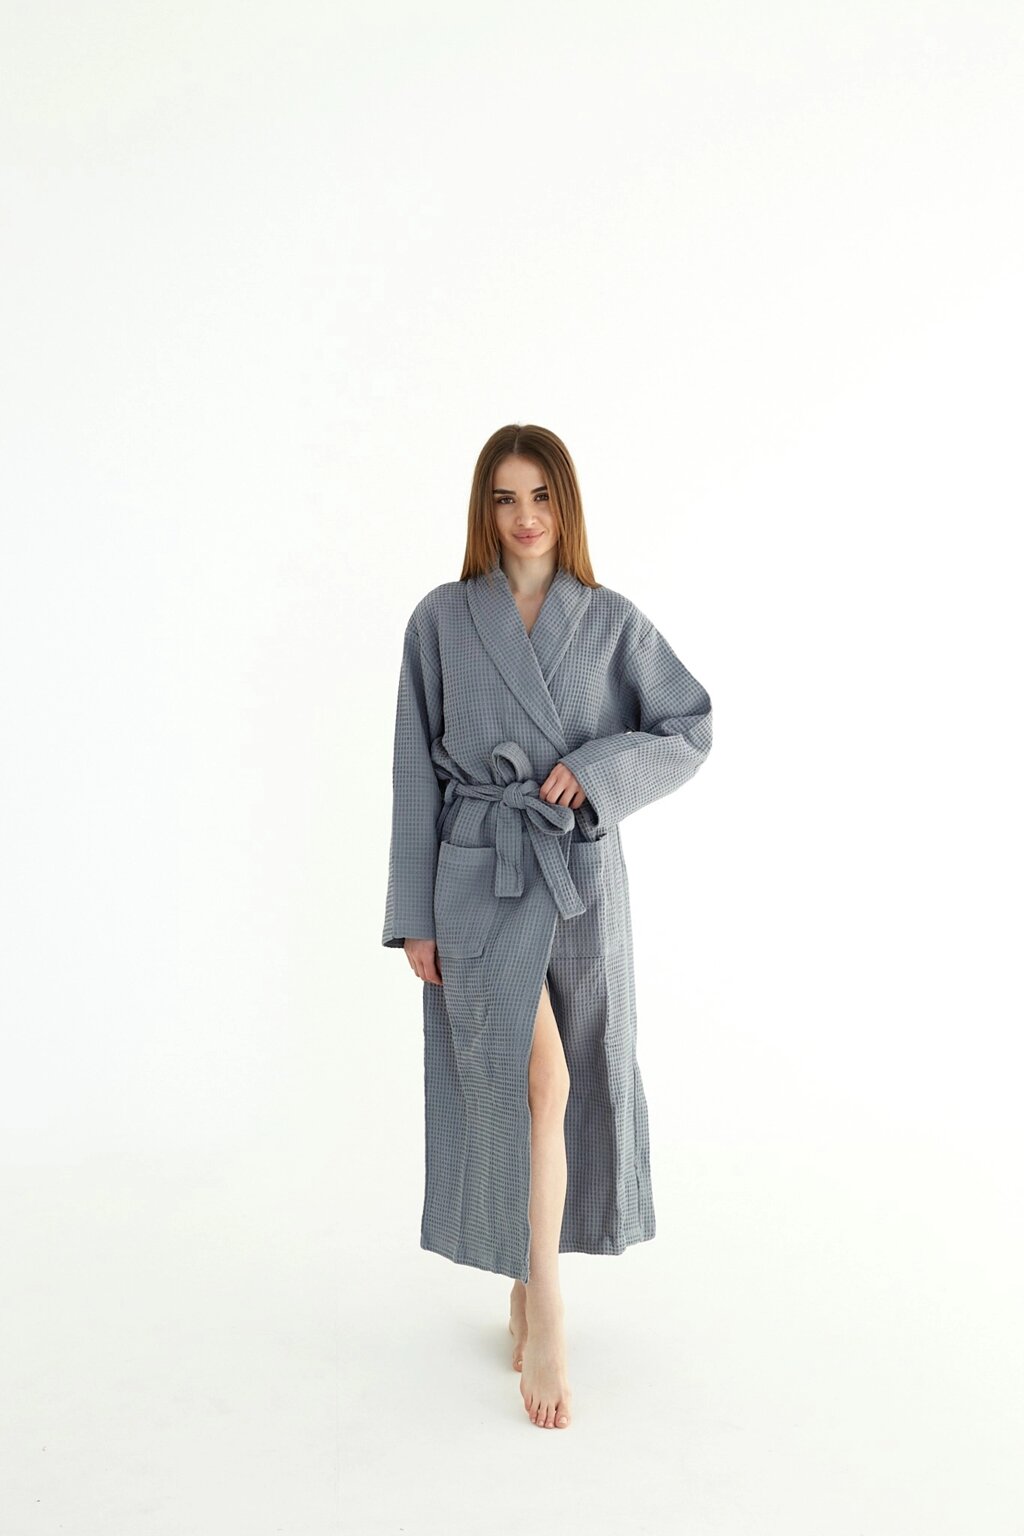 Вафельний халат жіночий сірий 100% бавовна 320 г/м2 від компанії IDEAL TEXTILE: махрові рушники, халати, постільна білизна - фото 1